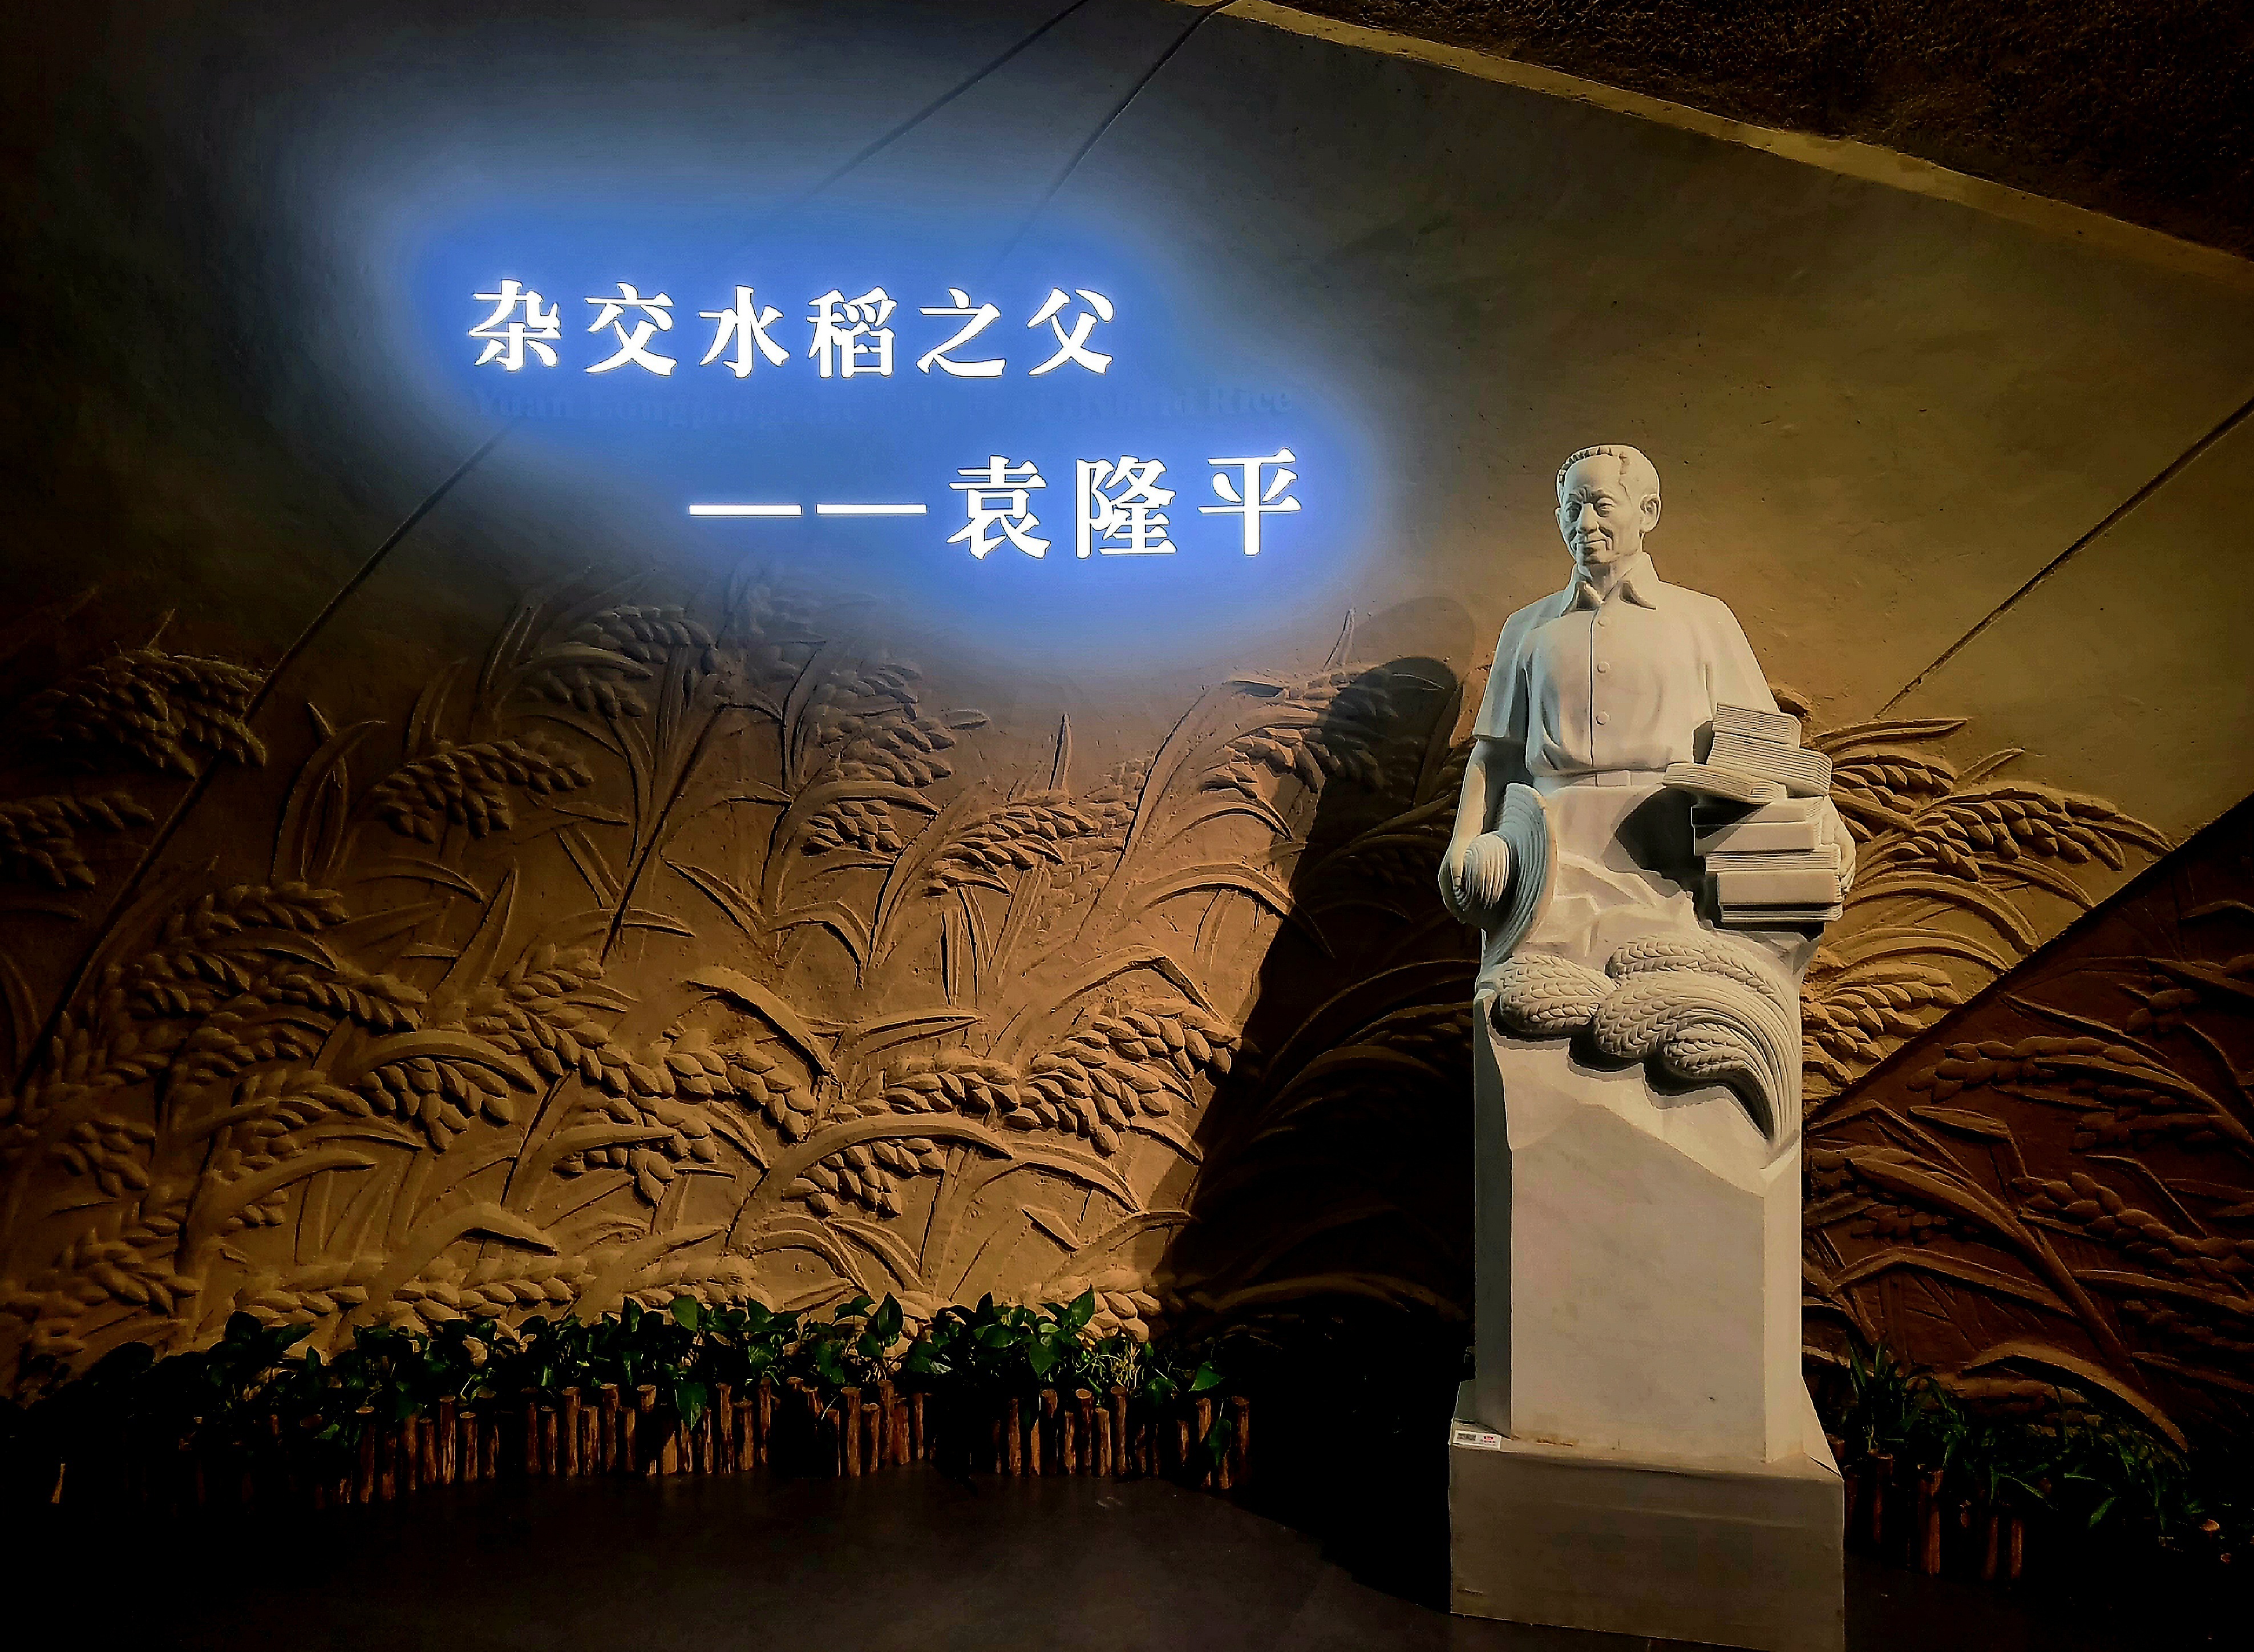 Άγαλμα του Γιουέν Λονγκπίνγκ (袁隆平: Υuán Lóngpíng), του «πατέρα του υβριδικού ρυζιού» από την έκθεση για την ζωή του στην Τσανγκσά, πρωτεύουσα επαρχίας Χενάν, στις 31 Οκτωβρίου 2023 (Φωτογραφία Εύα Παπαζή/CRI Greek)